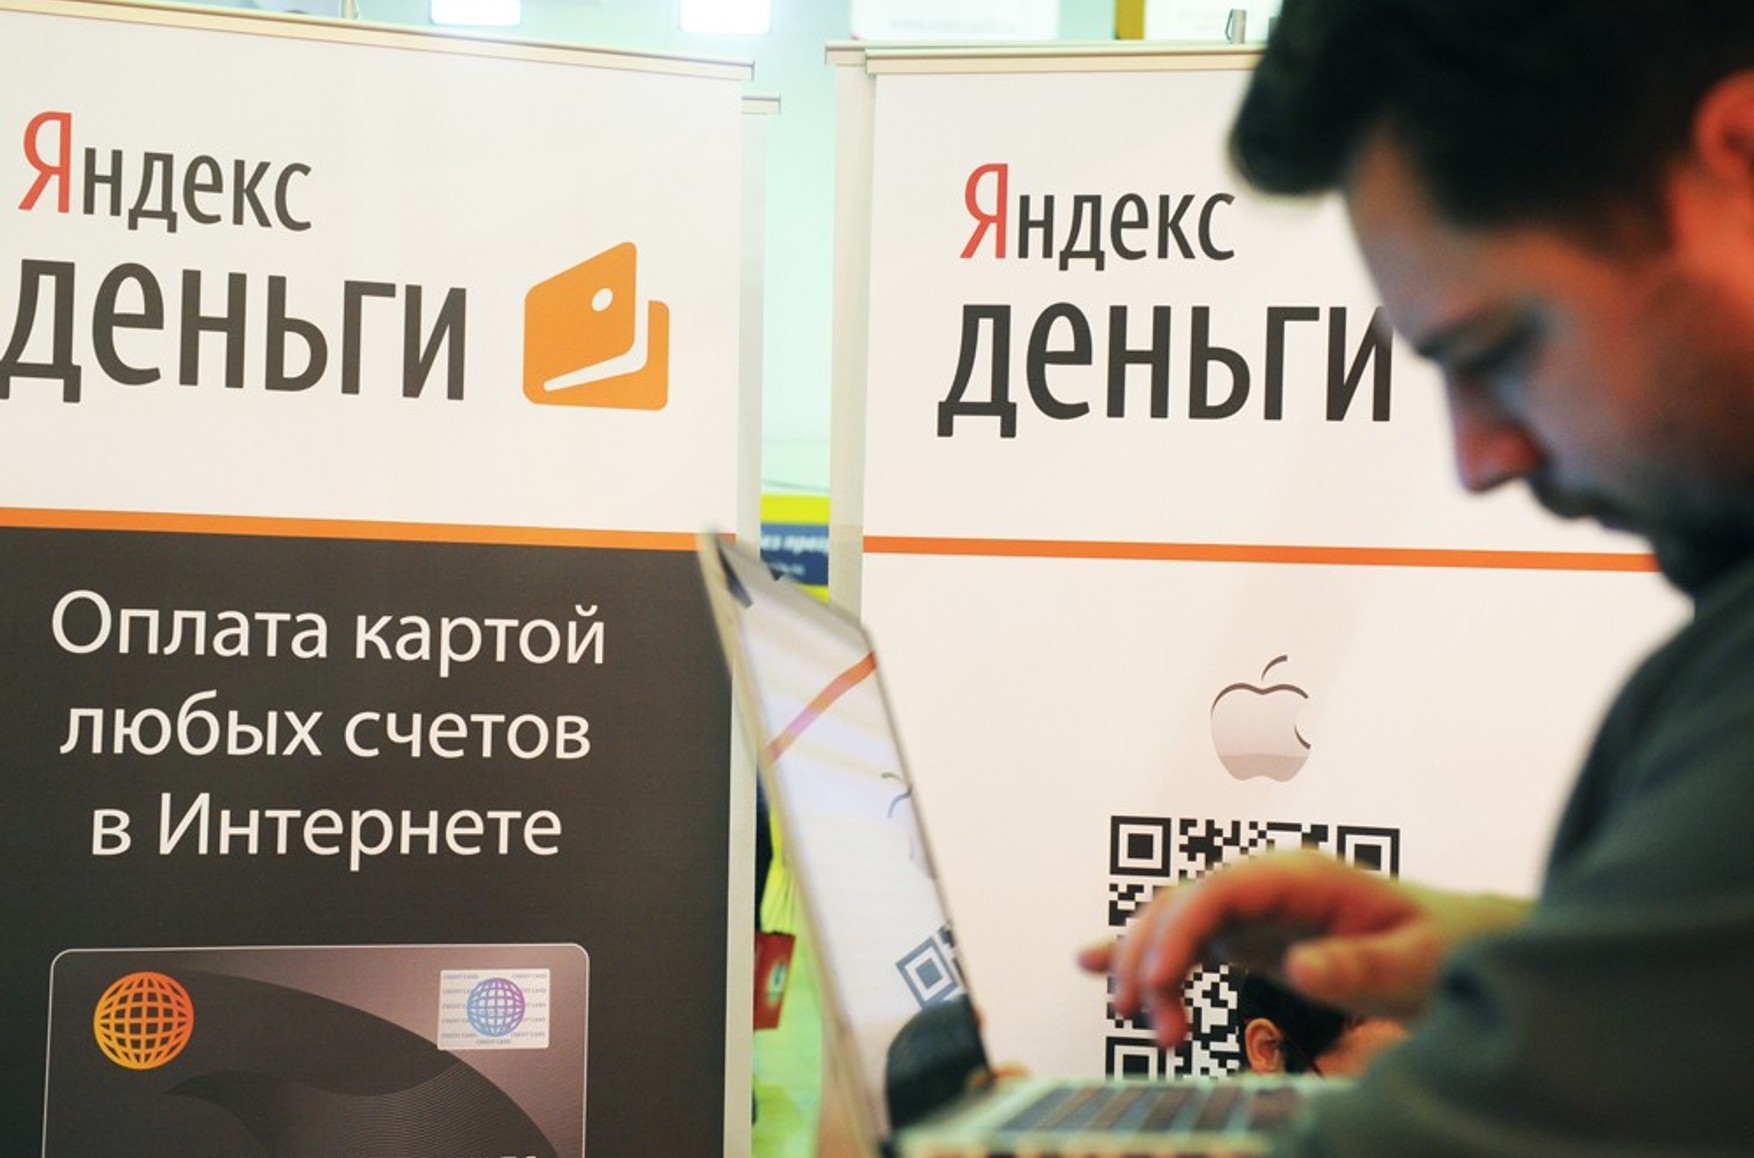 Проти соратників Навального відновили стару справу про Яндекс-гаманцях, директора видання 7х7 допитали і запропонували стати потерпілим